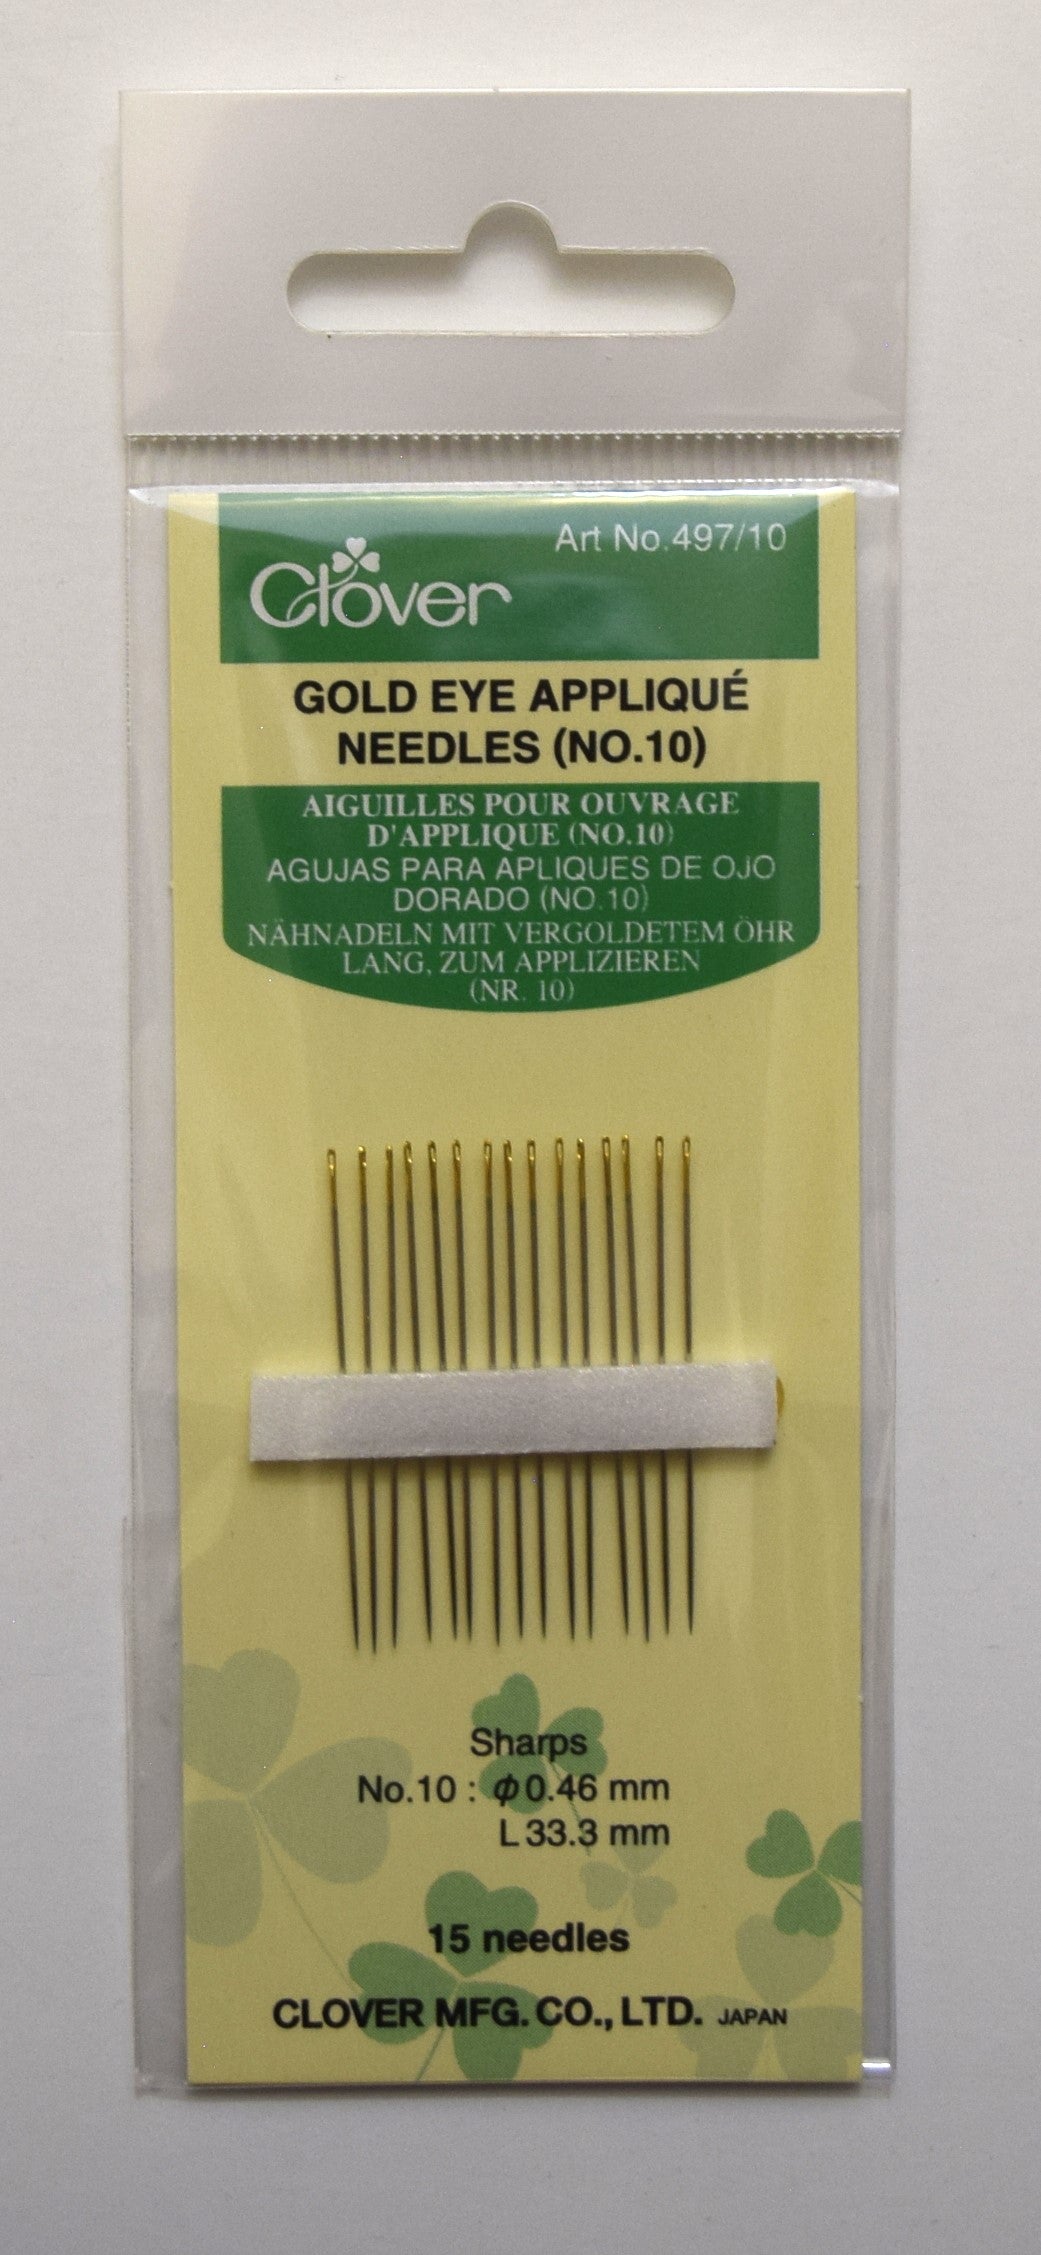 Gold Eye Applique Needles